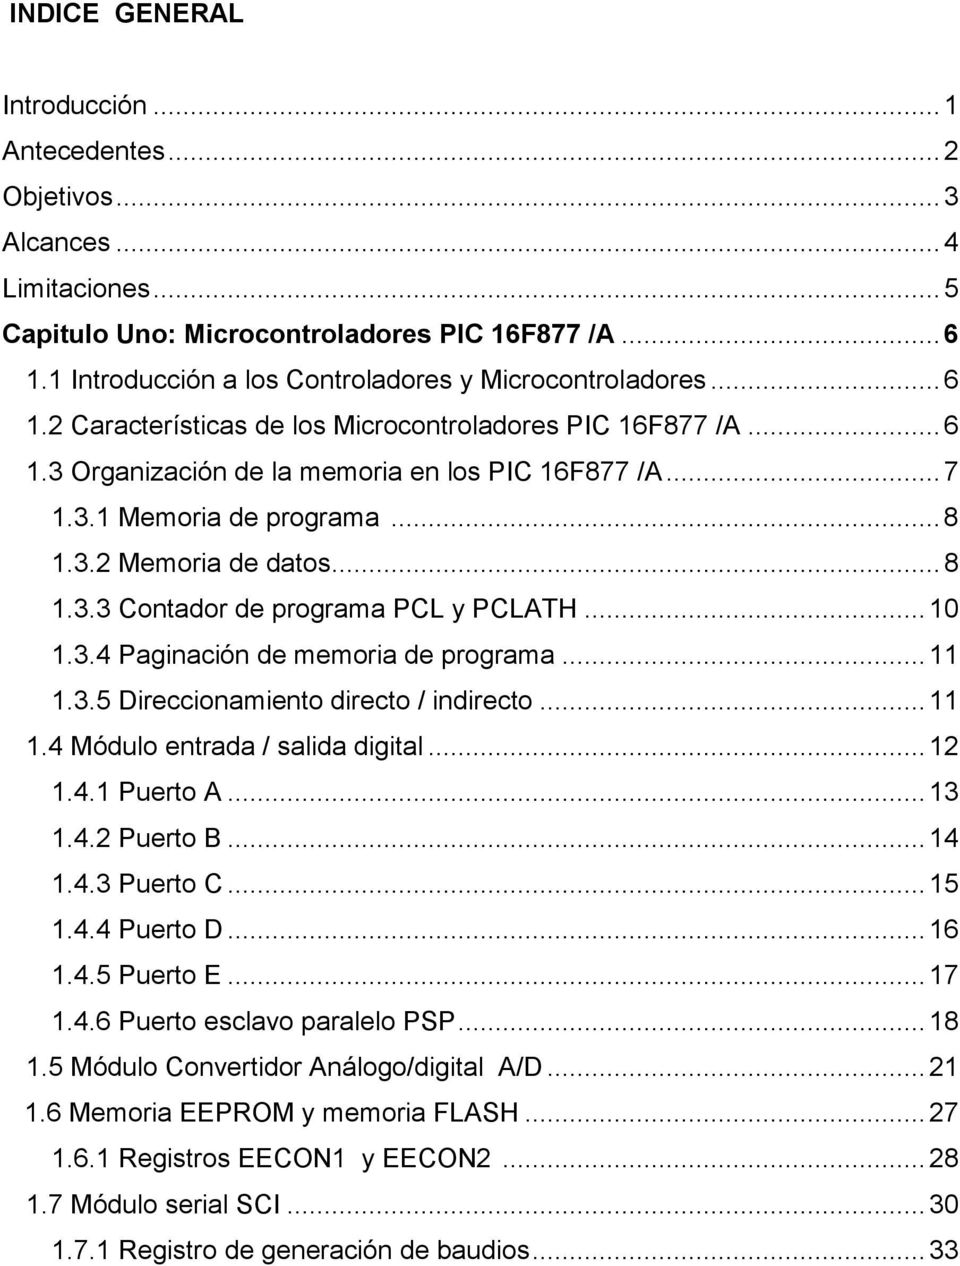 .. 8 1.3.2 Memoria de datos... 8 1.3.3 Contador de programa PCL y PCLATH... 10 1.3.4 Paginación de memoria de programa... 11 1.3.5 Direccionamiento directo / indirecto... 11 1.4 Módulo entrada / salida digital.